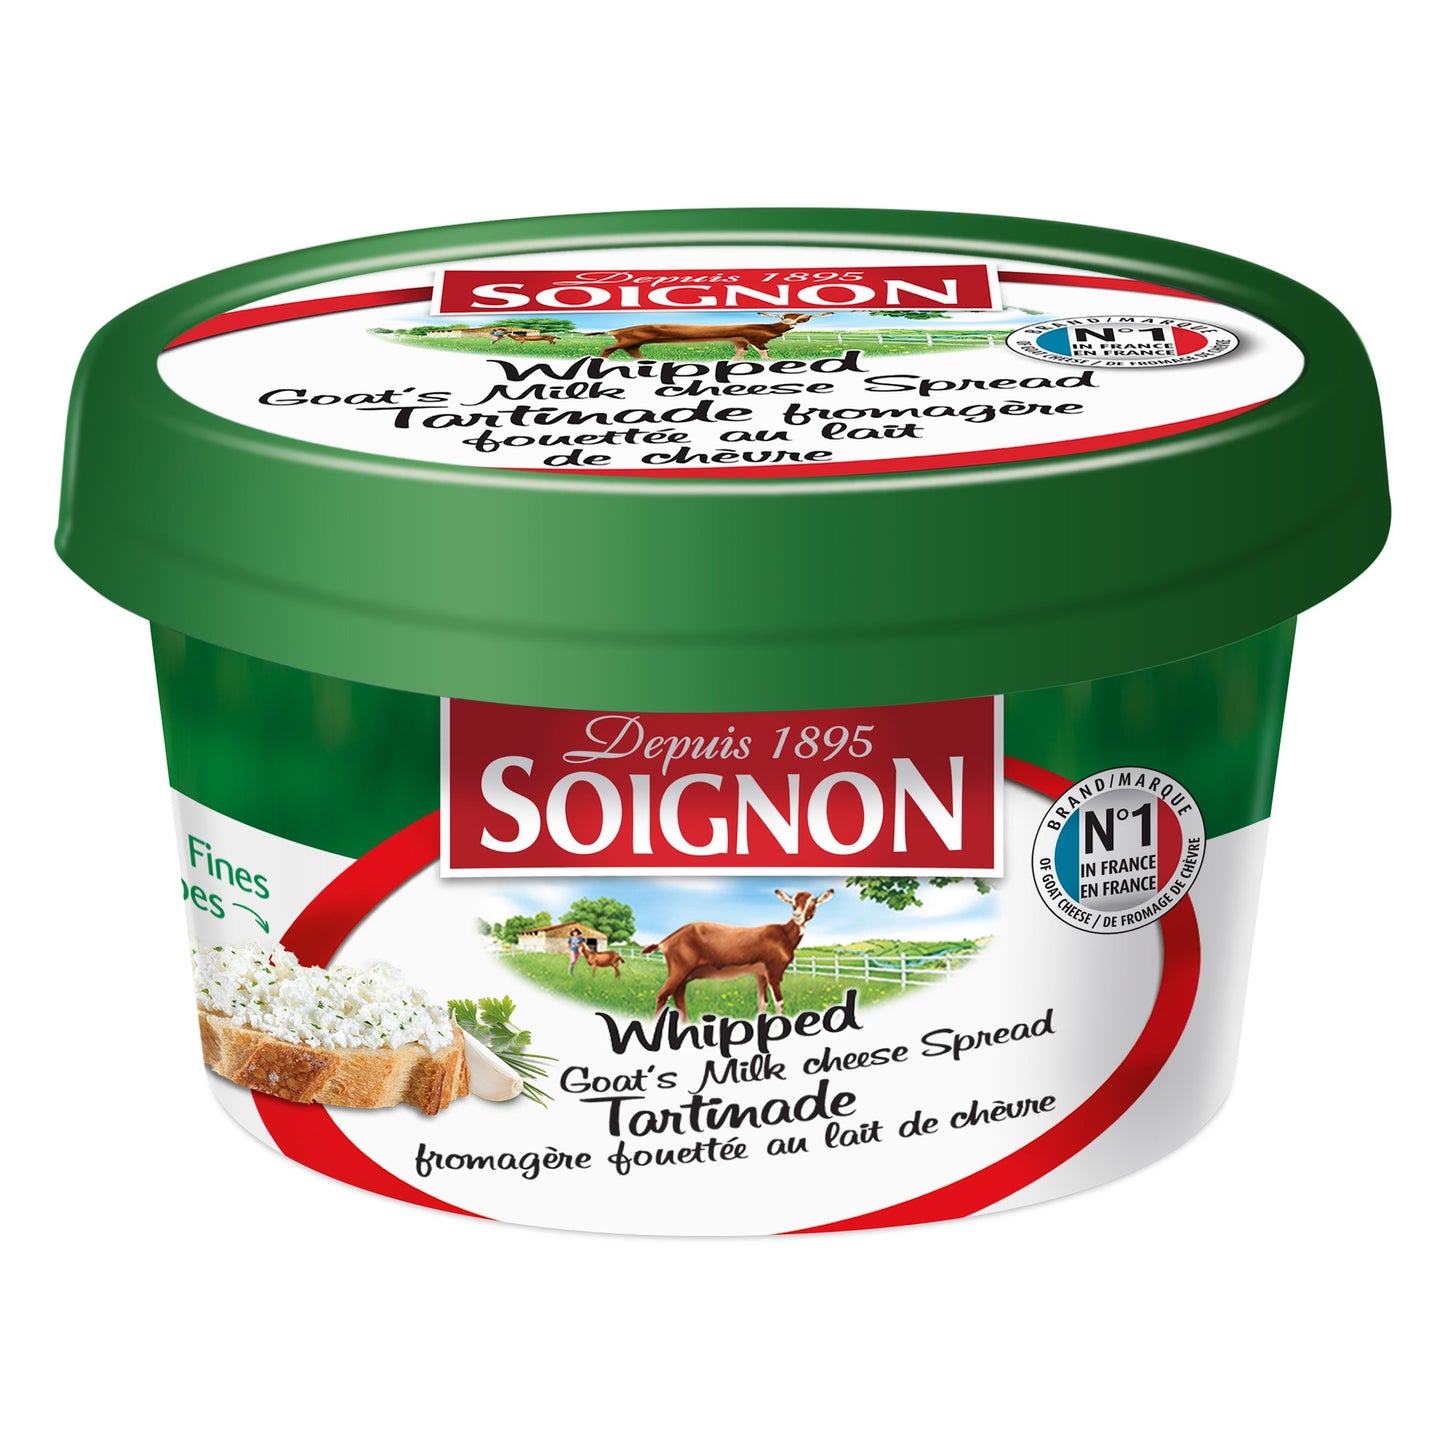 Soignon Whipped Goat Milk 140g